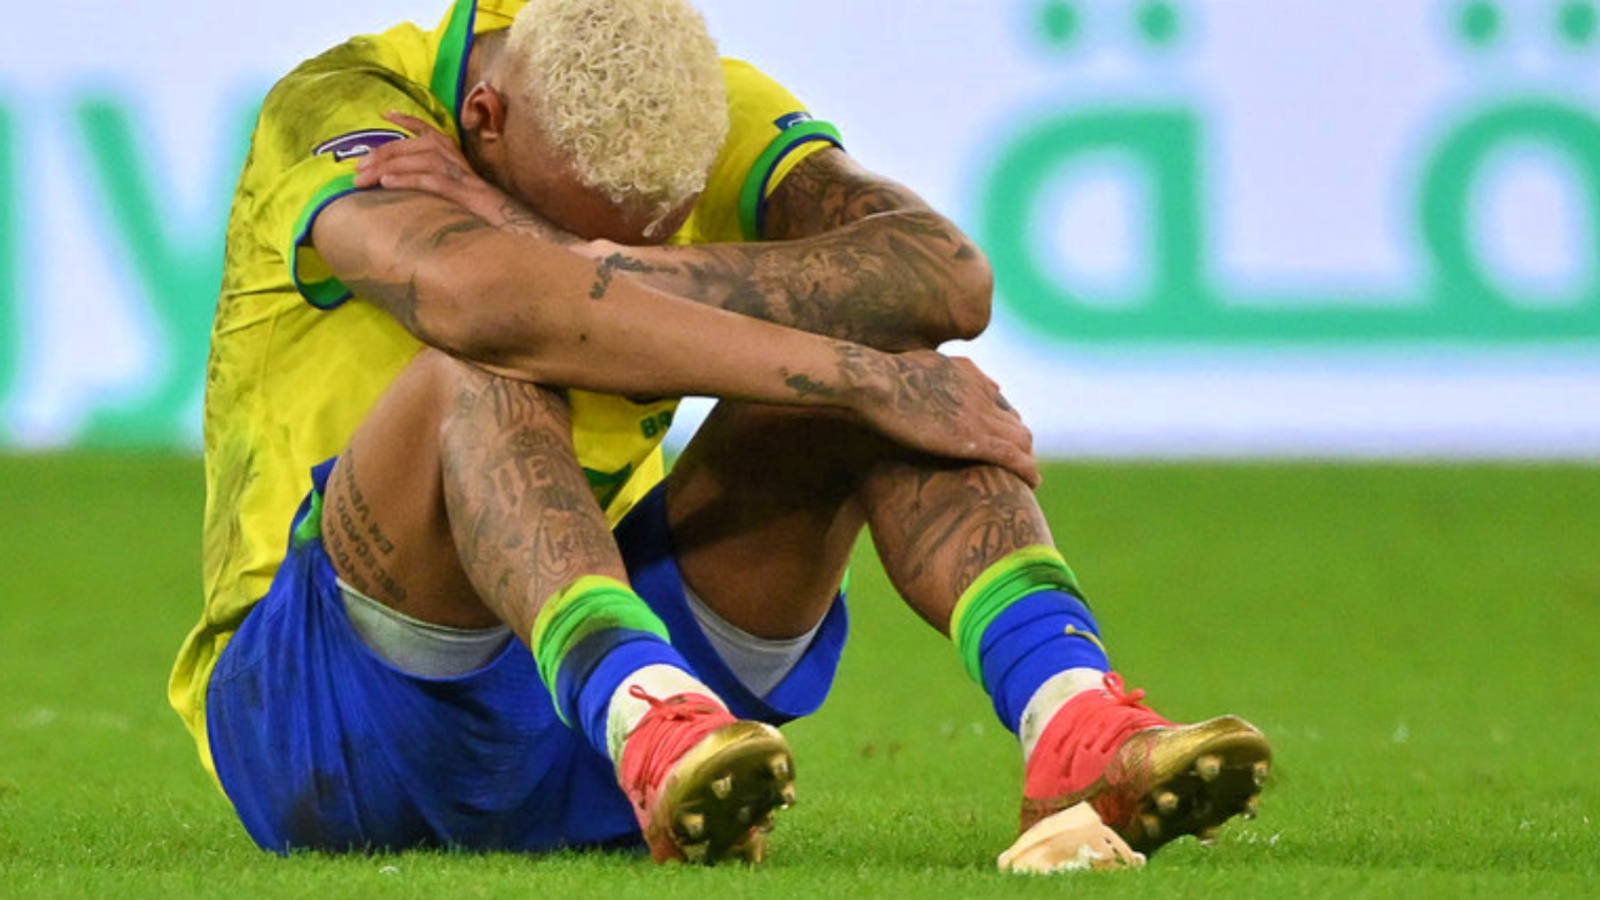 اللاعب البرازيلي نيمار متأثراً بخسارة منتخبه أمام كرواتيا وانتهاء المشوار عند ربع النهائي